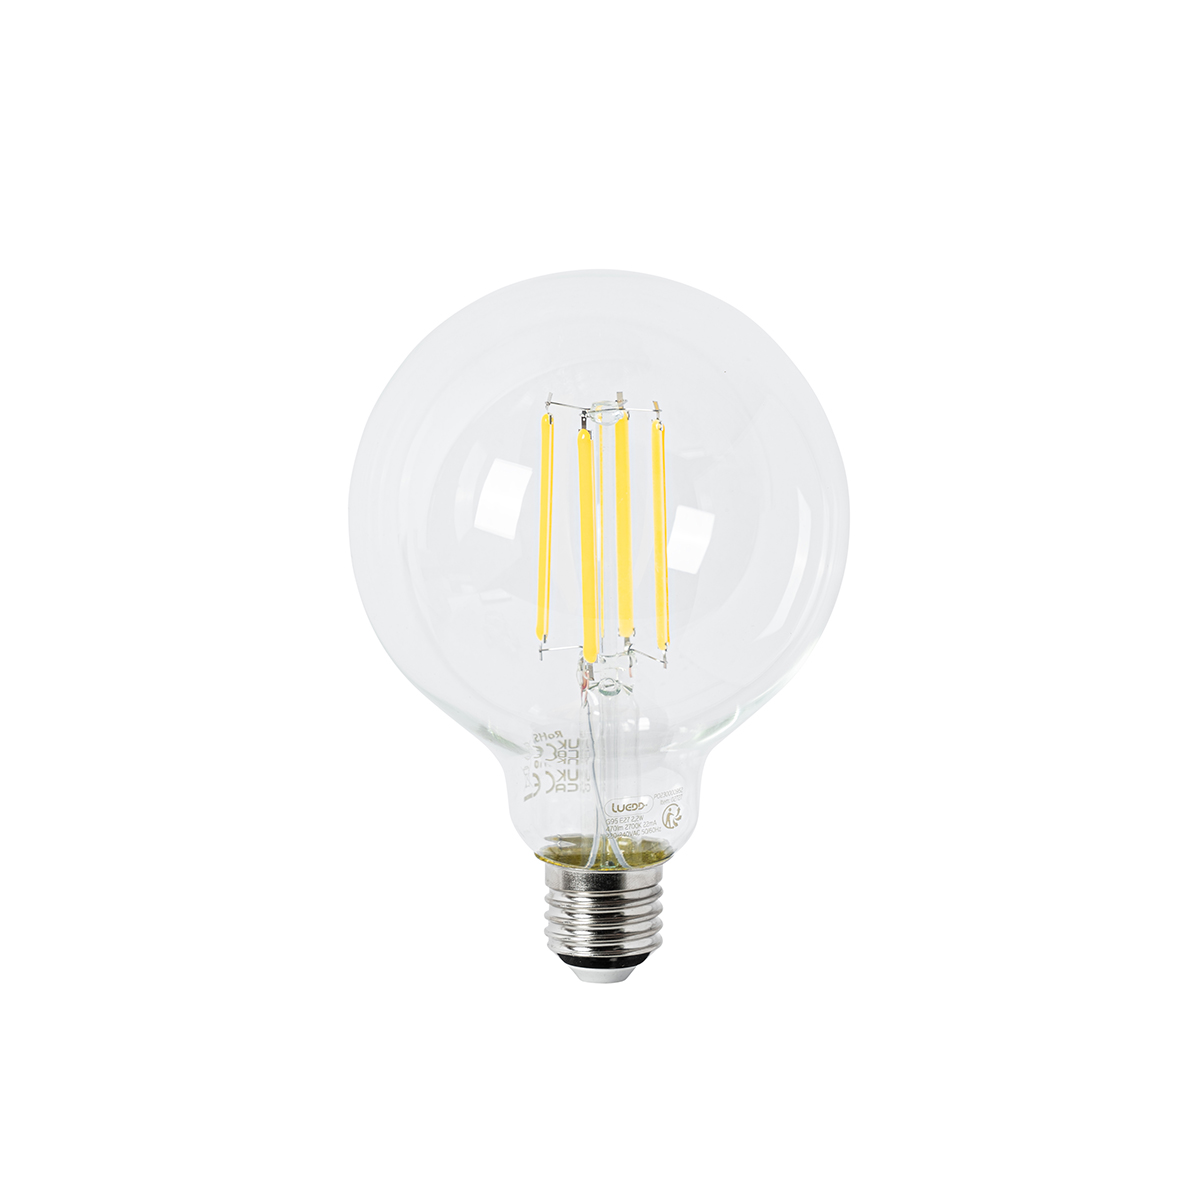 Lampe ampoule source filament LED B22 4W 2700K 350lm tube T30